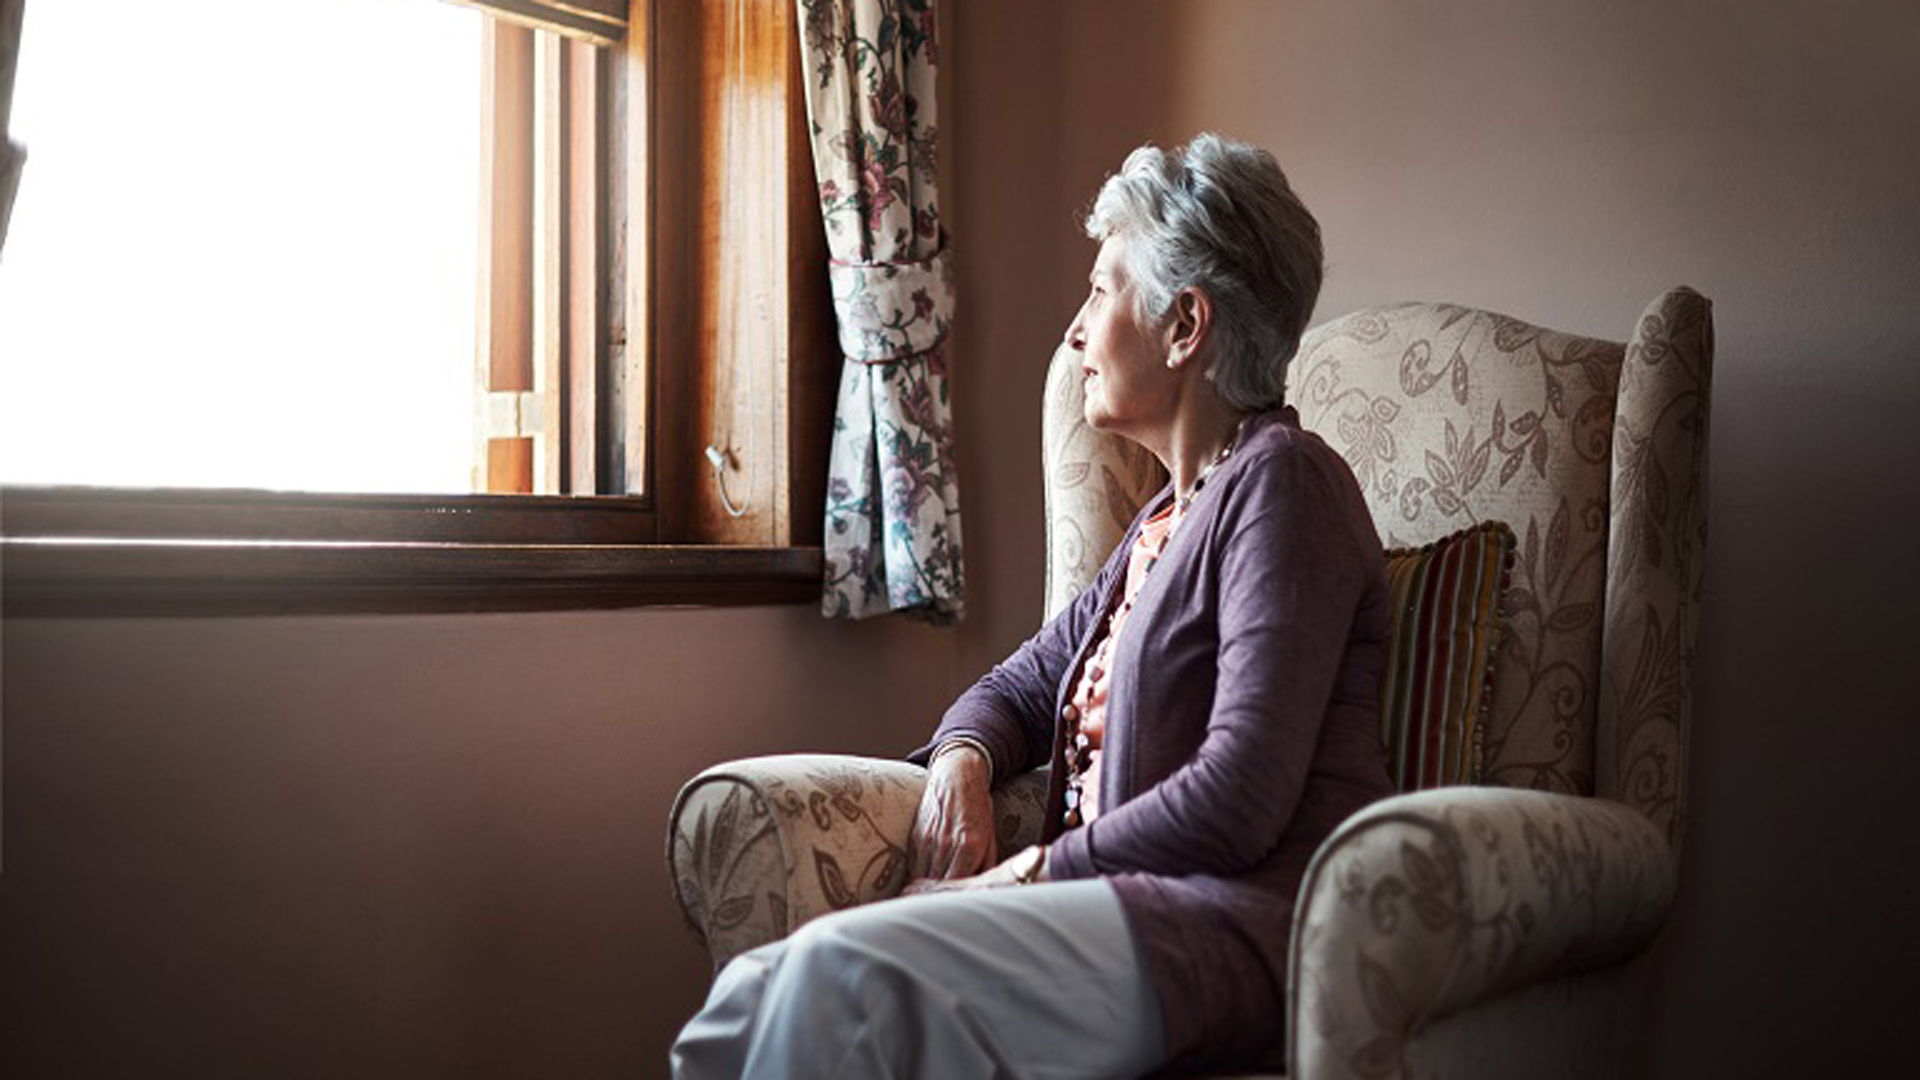 Con la soledad el proceso mental de adquirir conocimiento se dificulta y aumenta el riesgo de demencia en adultos mayores.

